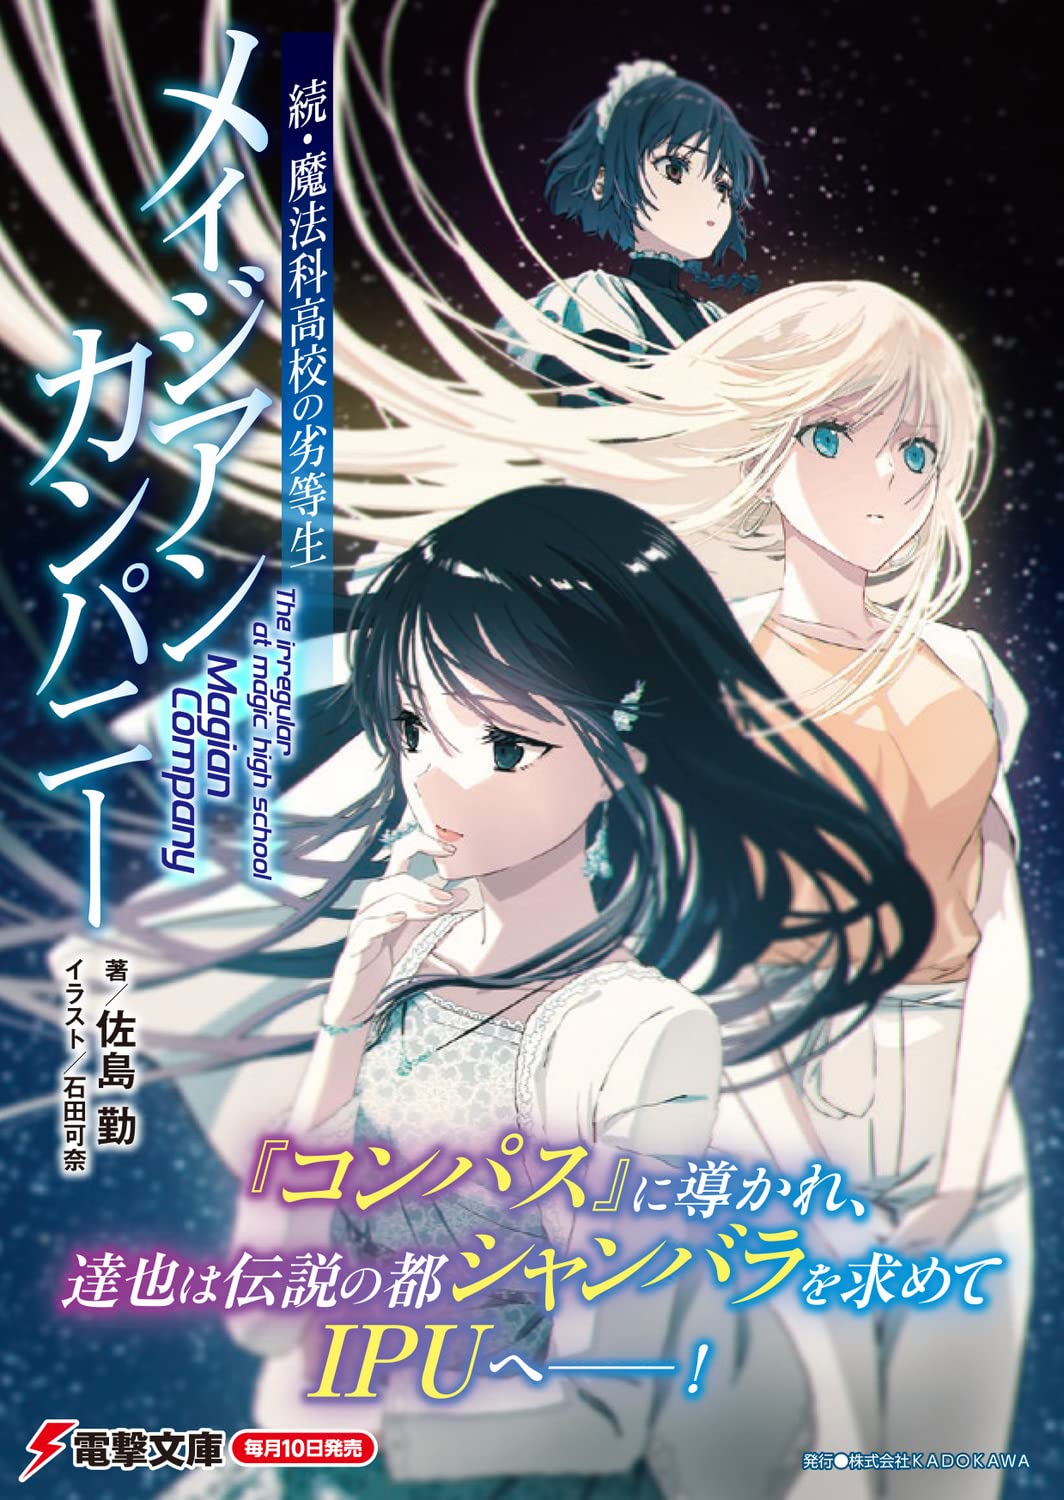 Light Novel Like Zoku Mahouka Koukou no Rettousei: Magian Company